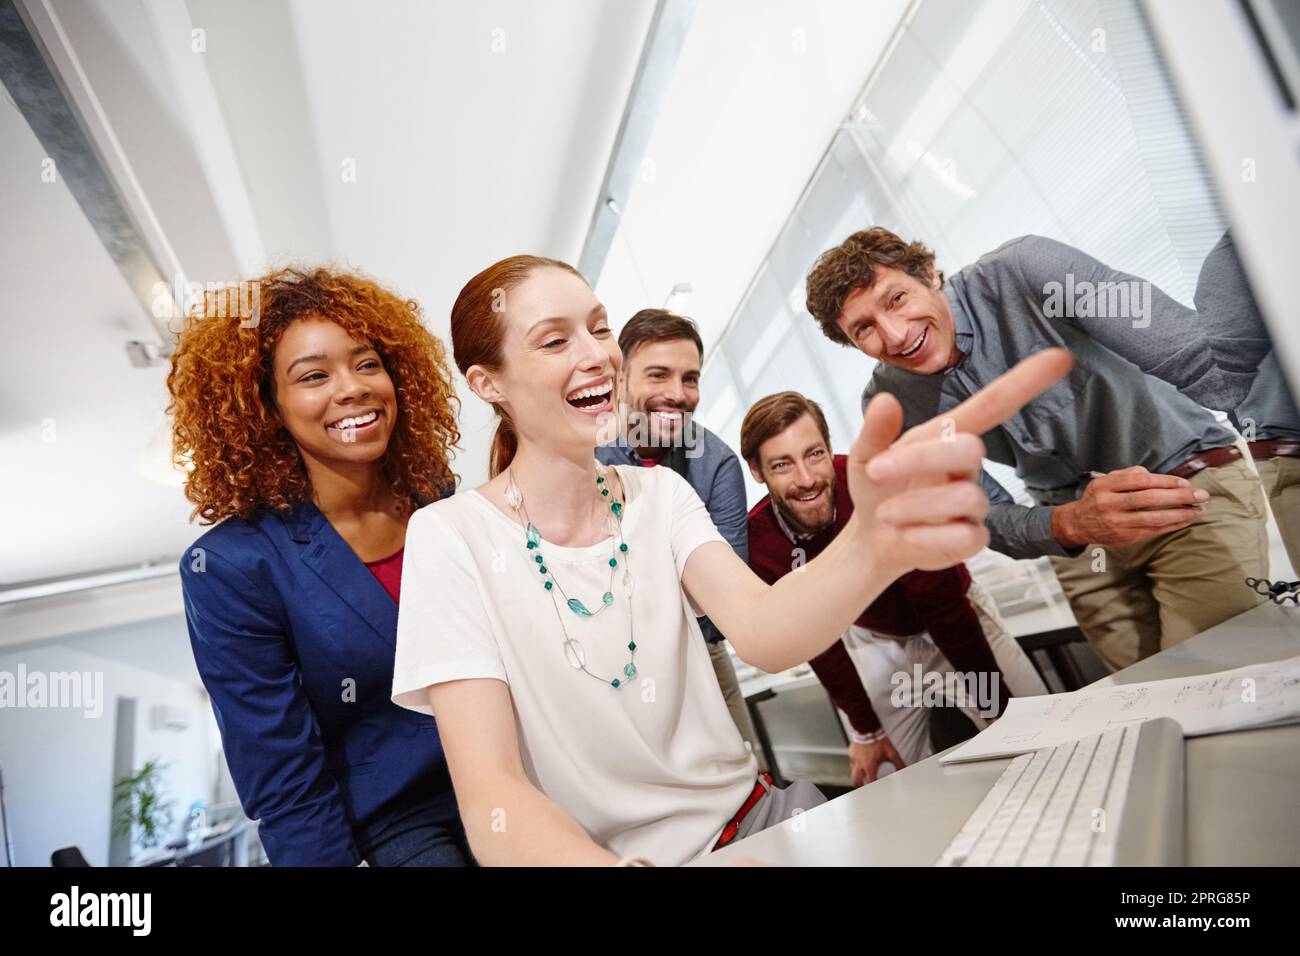 Social Media findet ihren Platz in jedem Büro. Eine Gruppe von Geschäftsleuten, die im Büro gemeinsam einen Computer betrachten. Stockfoto